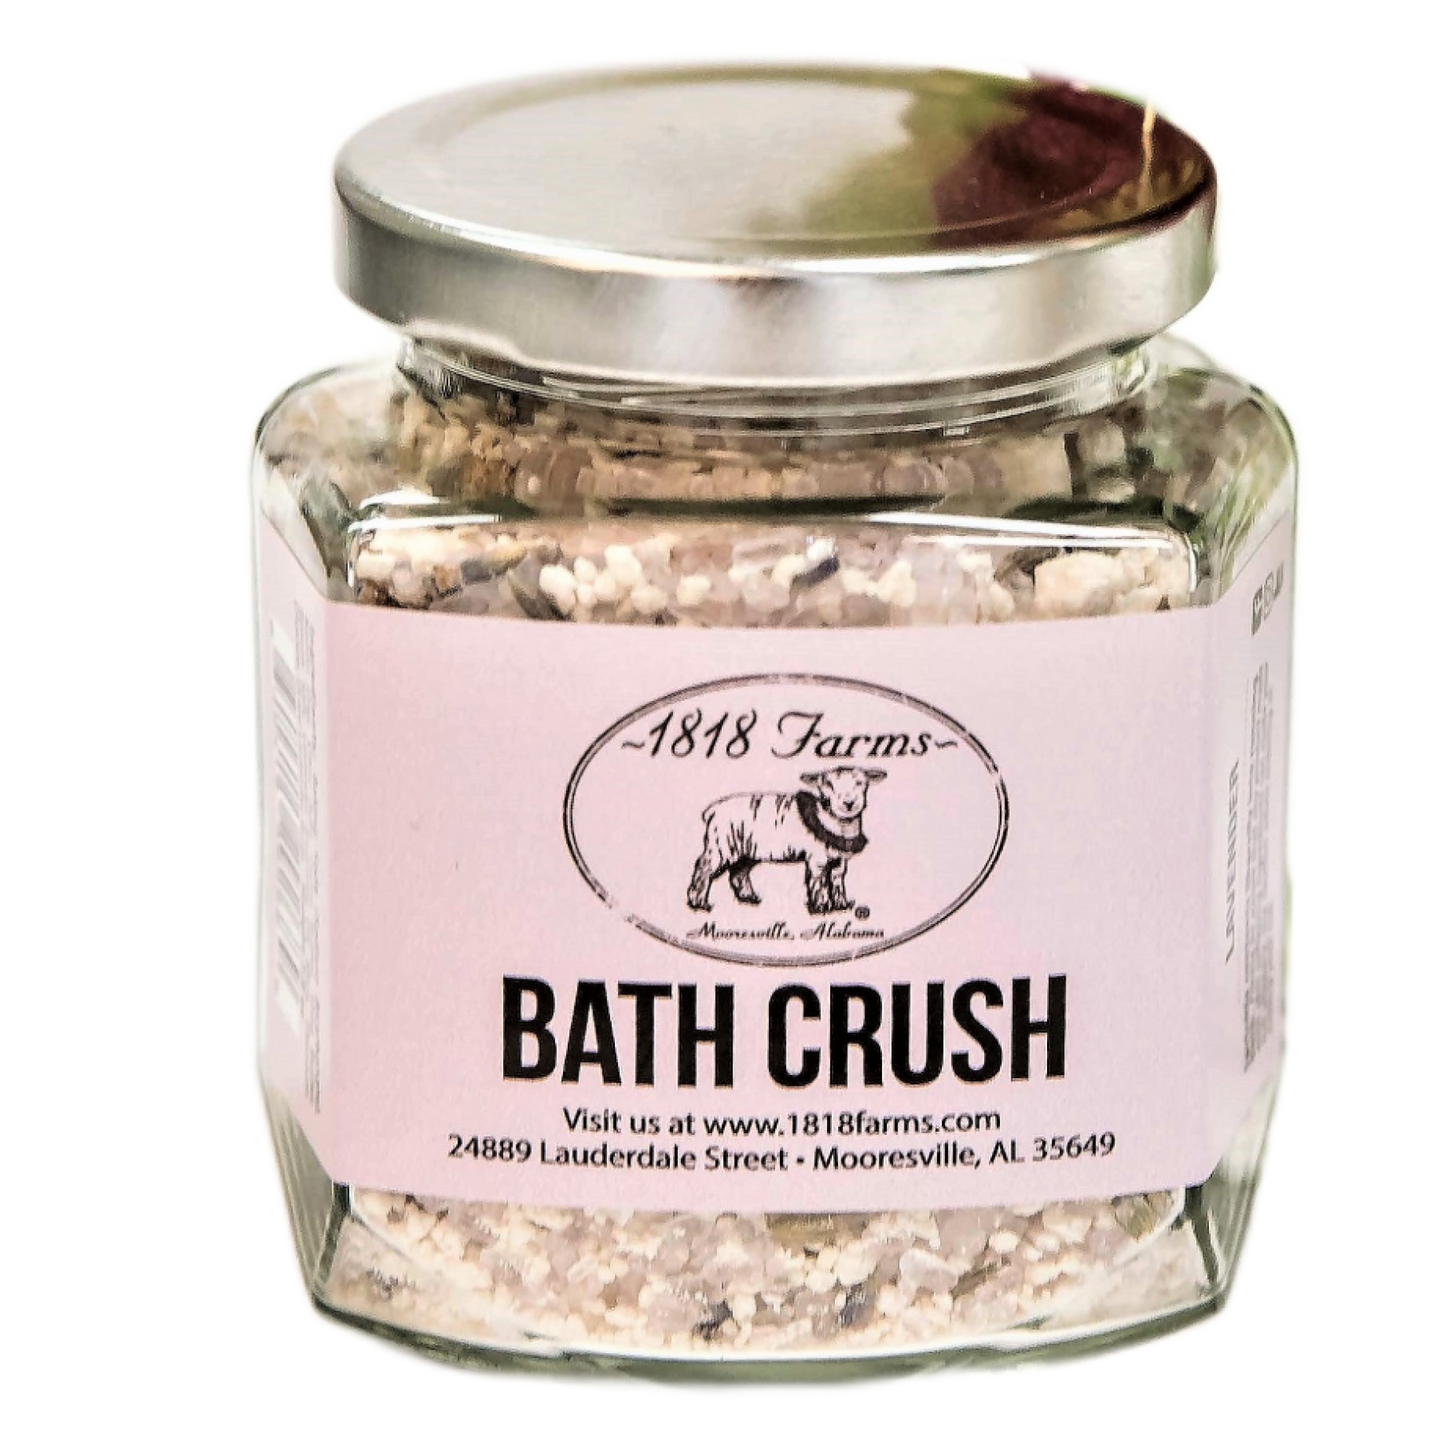 Bath Crush Bath Teas & Truffles 1818 Farms Lavender  